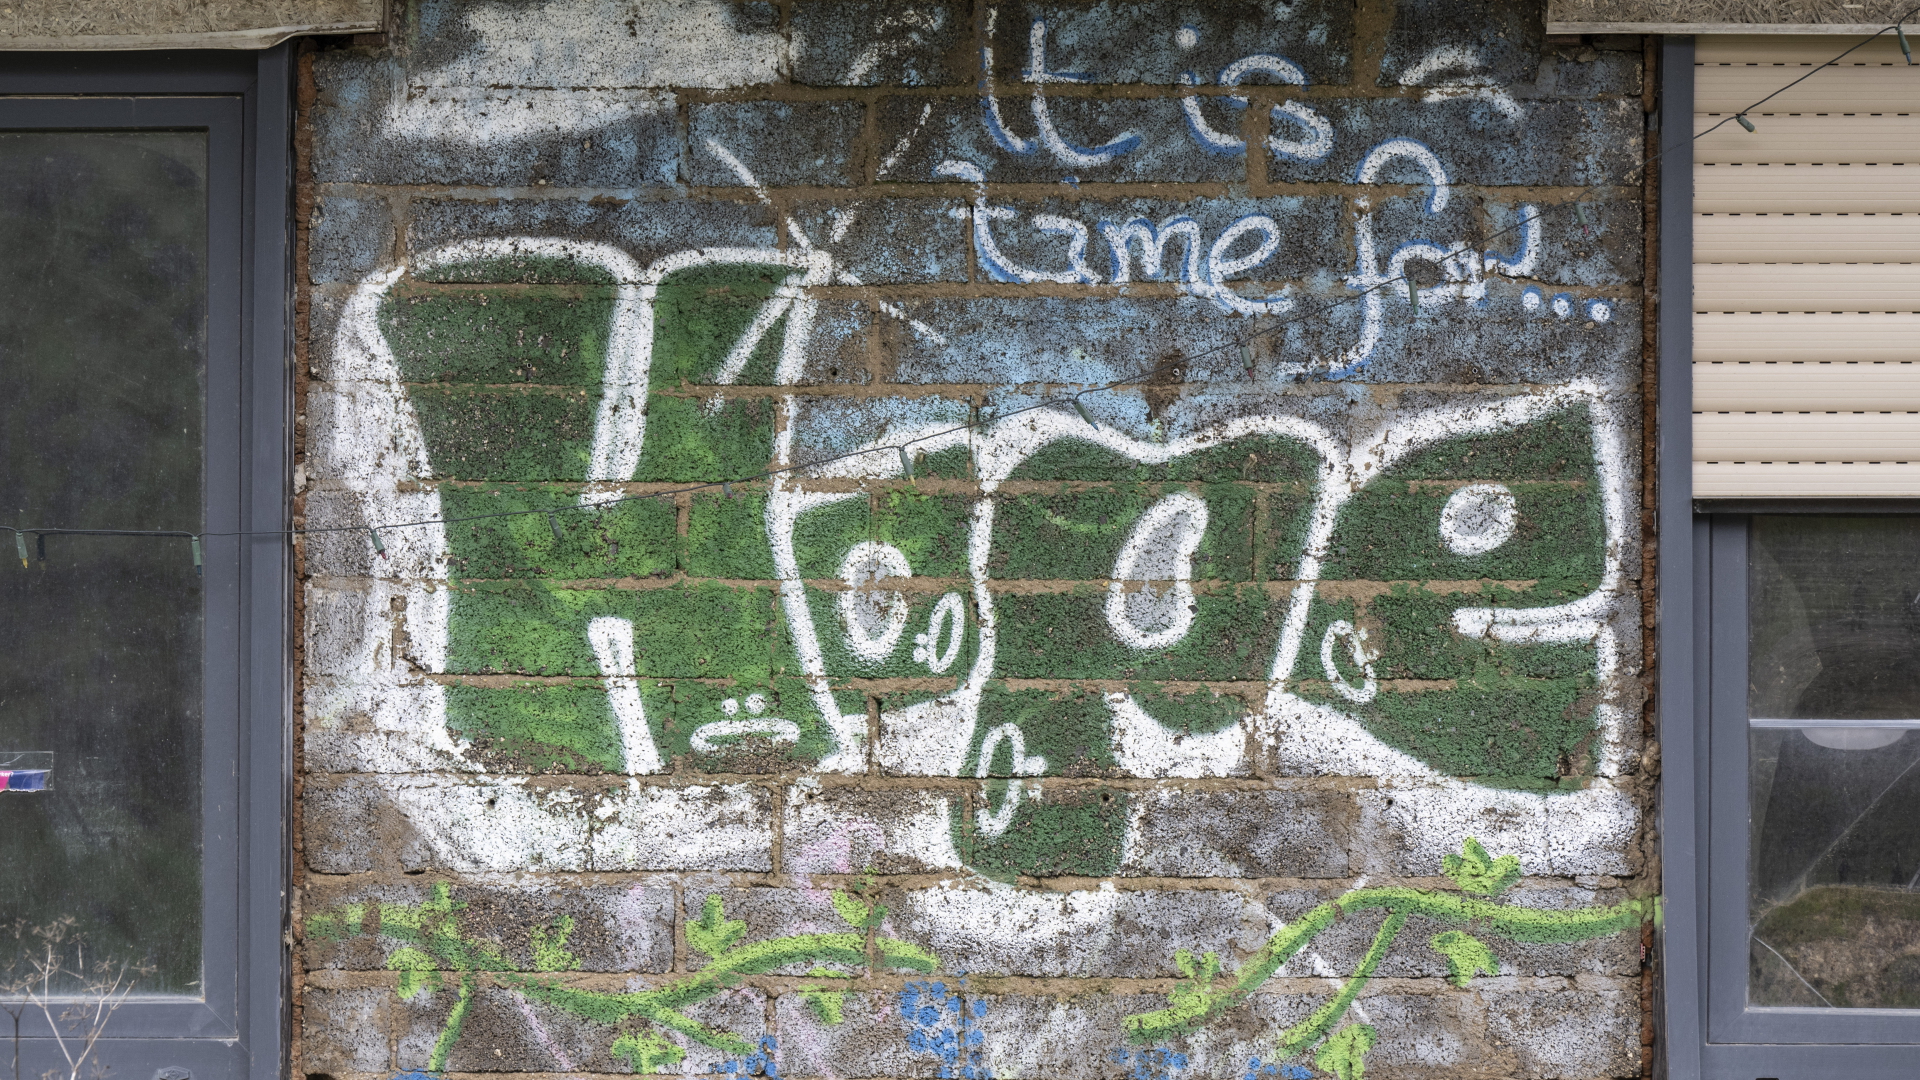 Graffito "Hope" (deutsch: Hoffnung) auf einer Häuserwand im Ahrtal | dpa